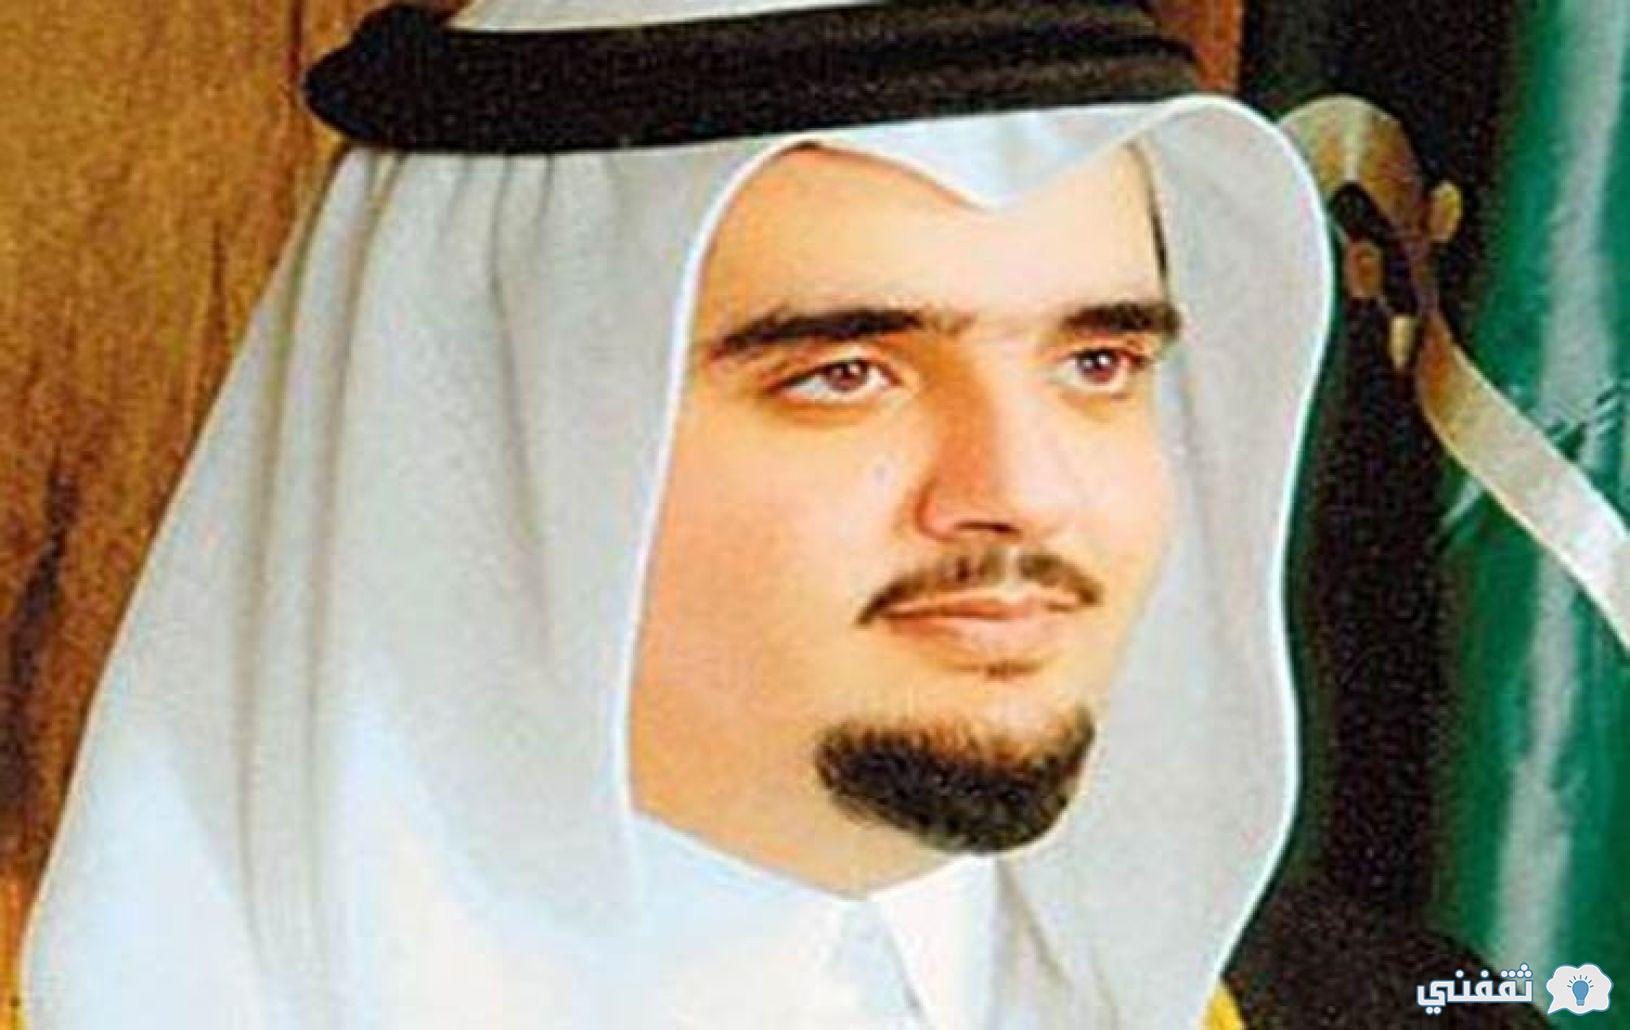 أرقام واتساب الأمير عبد العزيز بن فهد kfahadalsaud تواصل مع الأمير لطلب المساعدات المالية